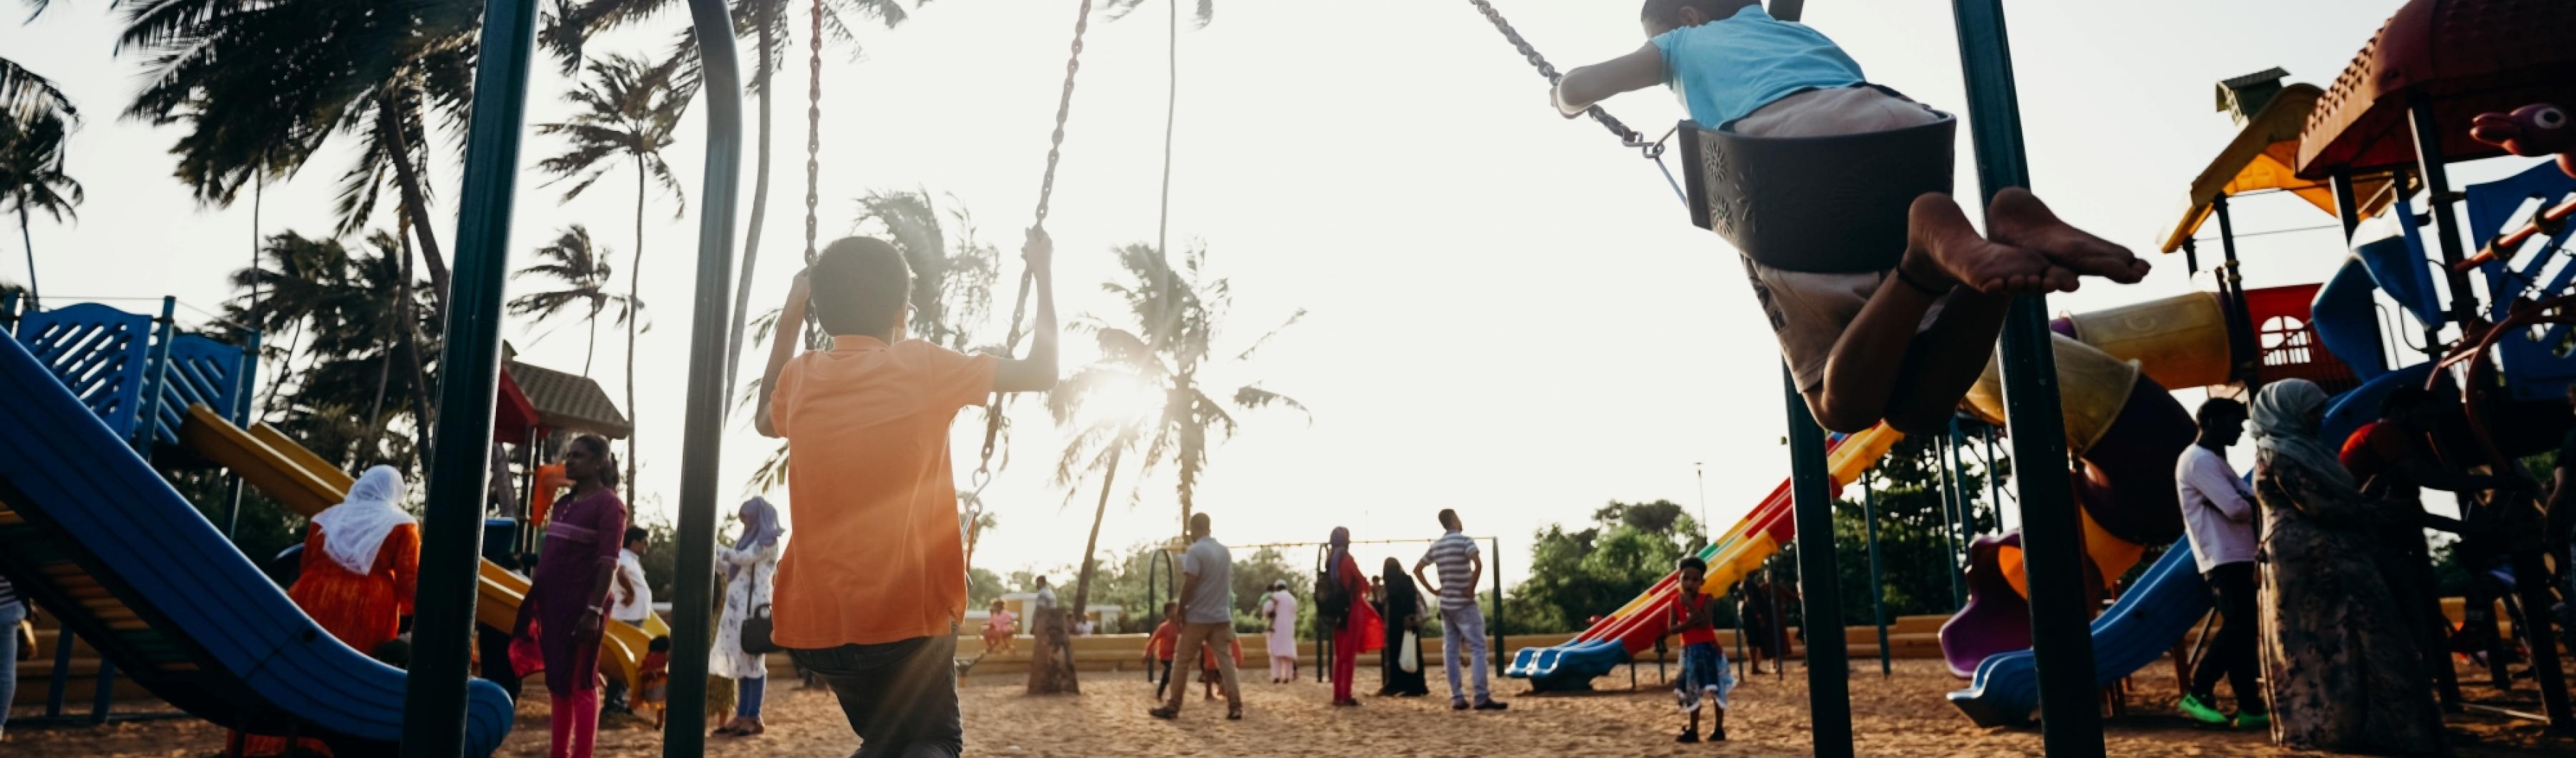 Enfants jouant sur des balançoires dans un parc de quartier bordé d'arbres